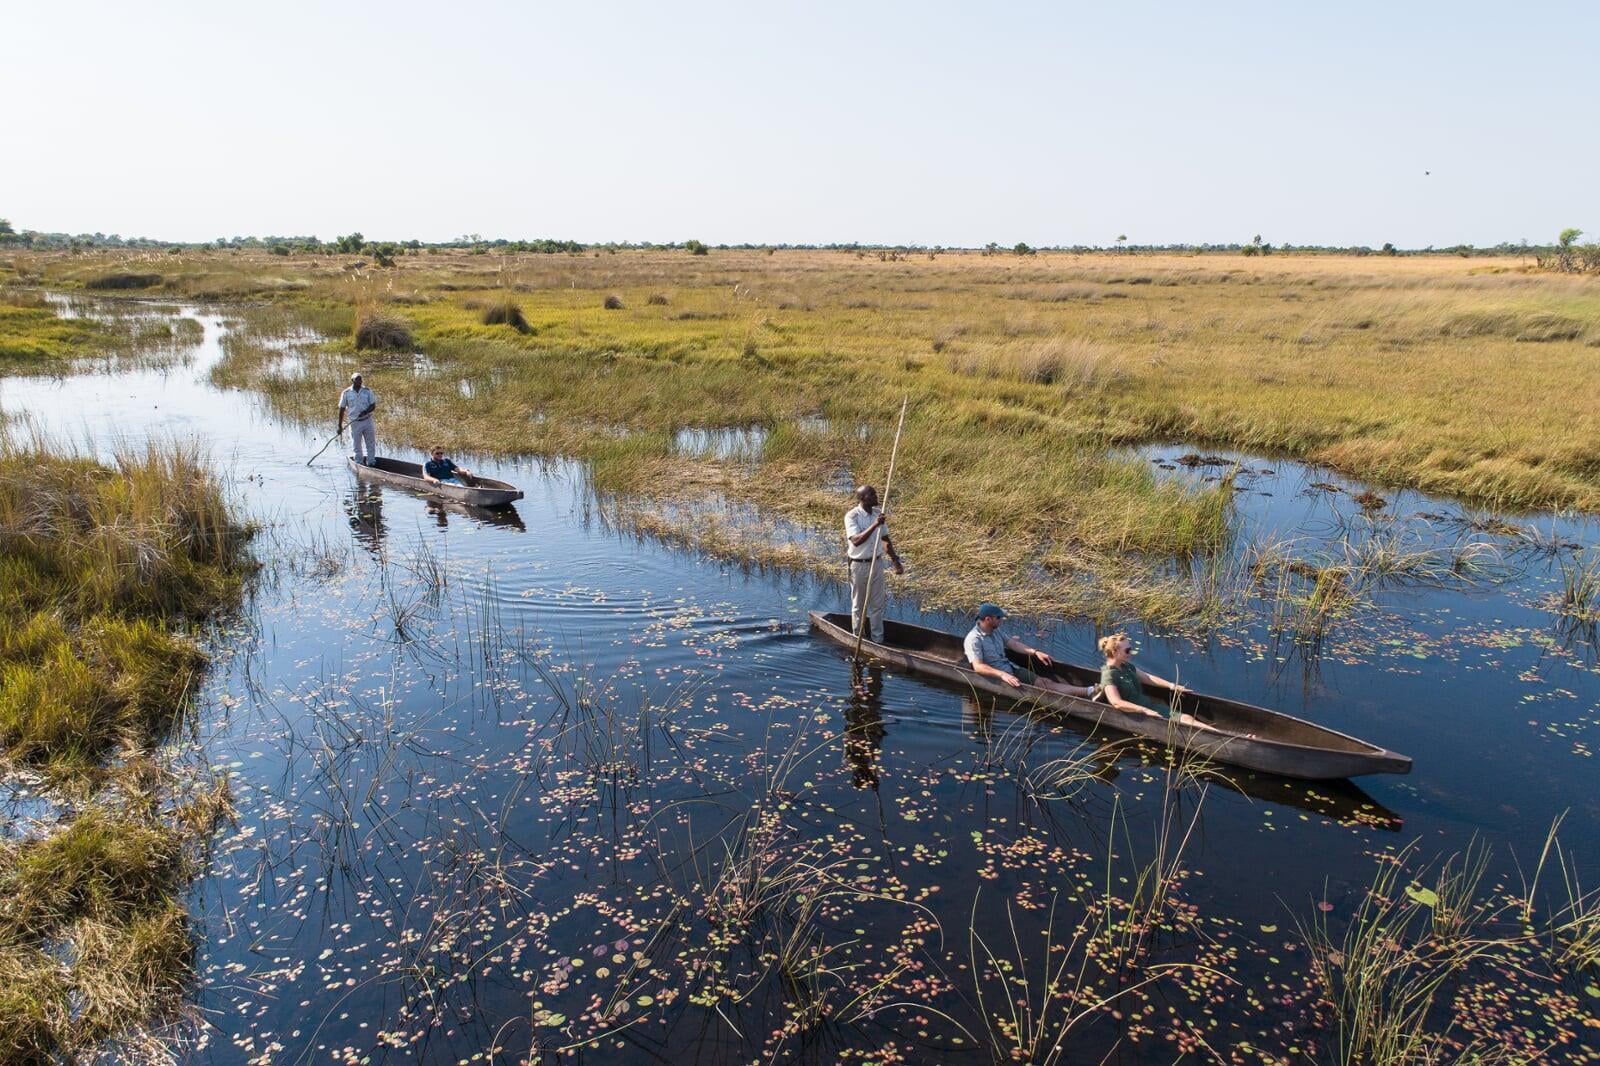 Mokoro in the Okavango Delta, Botswana